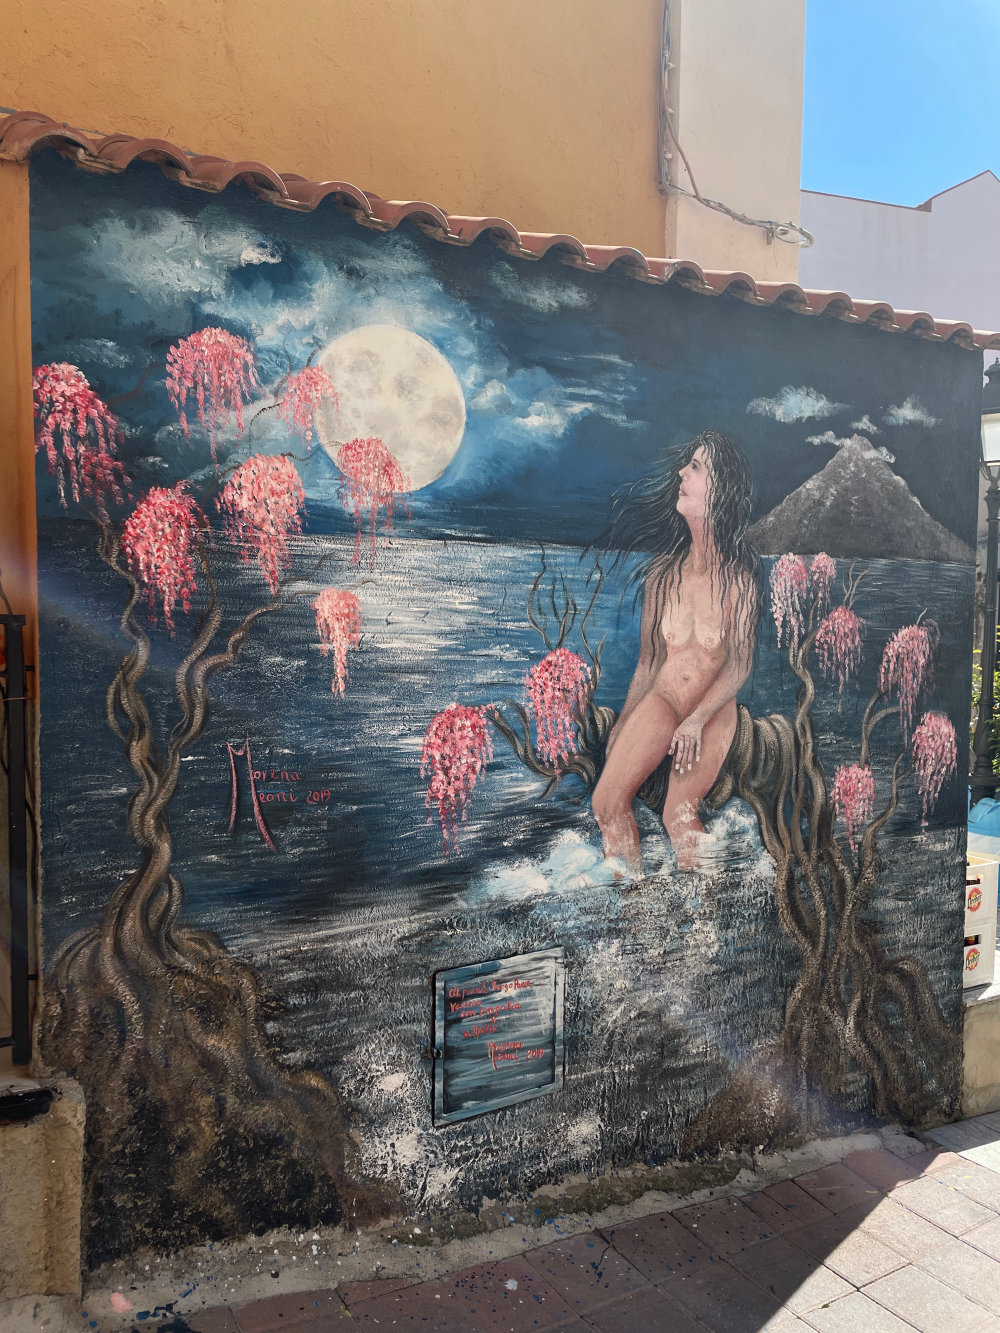 mural in Melito di Porto Salvo by artist unknown.